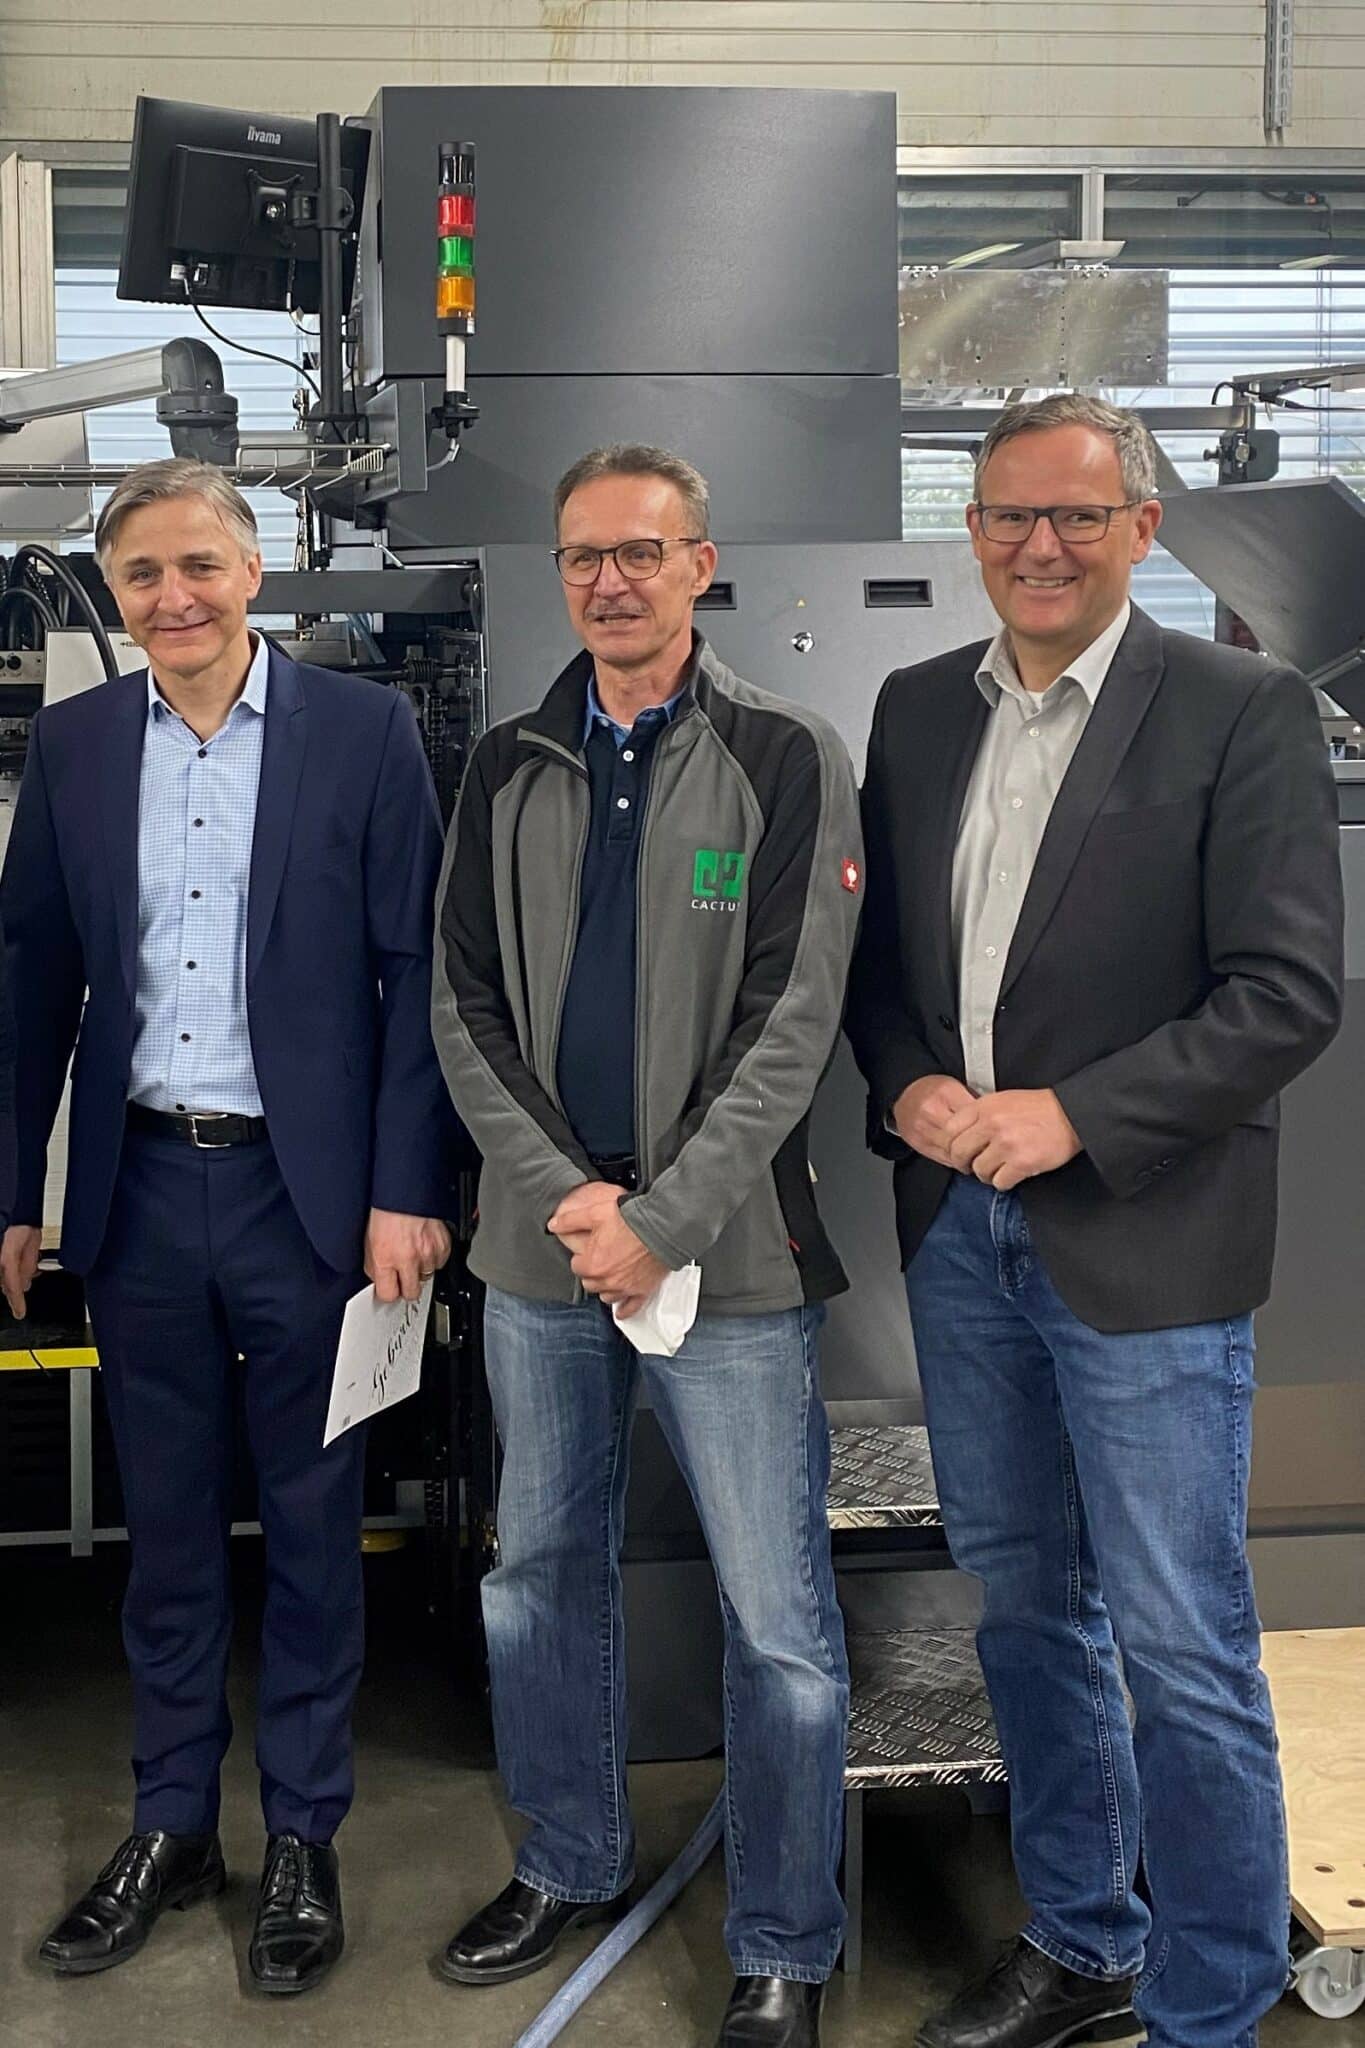 Davor Vnucec, Produktionsleiter Cactus (Mitte), Bernd Sauter, KAMA Geschäftsführer (links) und Frank Riedmüller von der MMV Leasing vor der installierten Stanz- und Veredelungsmaschine.